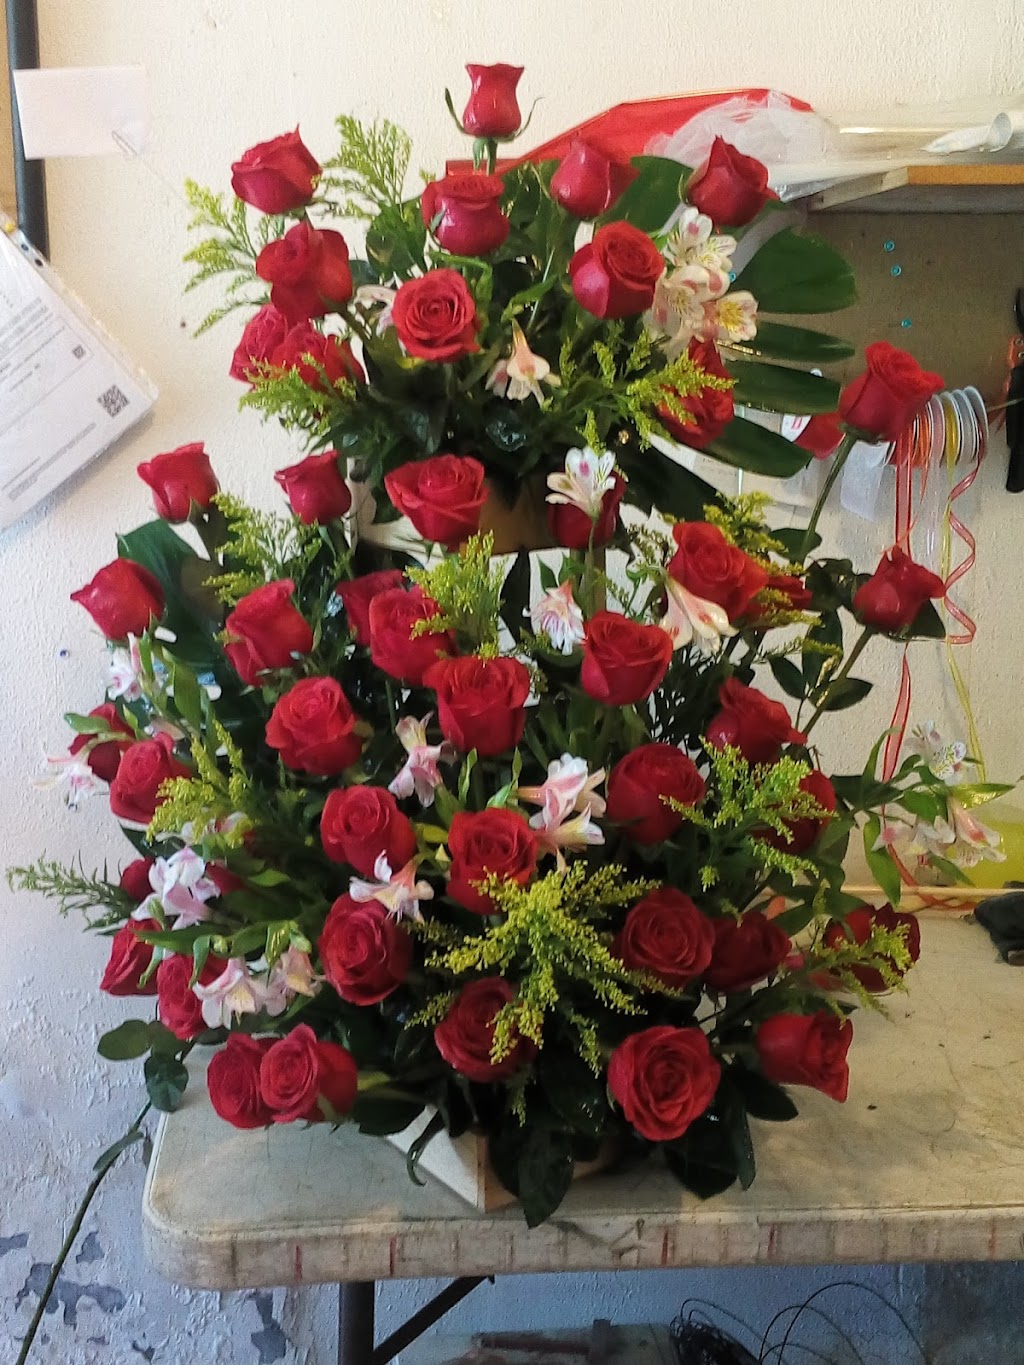 Flores y Emociones arte floral | Blvd. Gómez Morín #1652-C, Entre Neptuno y Fidel Ávila, Satélite, 32543 Cd Juárez, Chih., Mexico | Phone: 656 639 2362